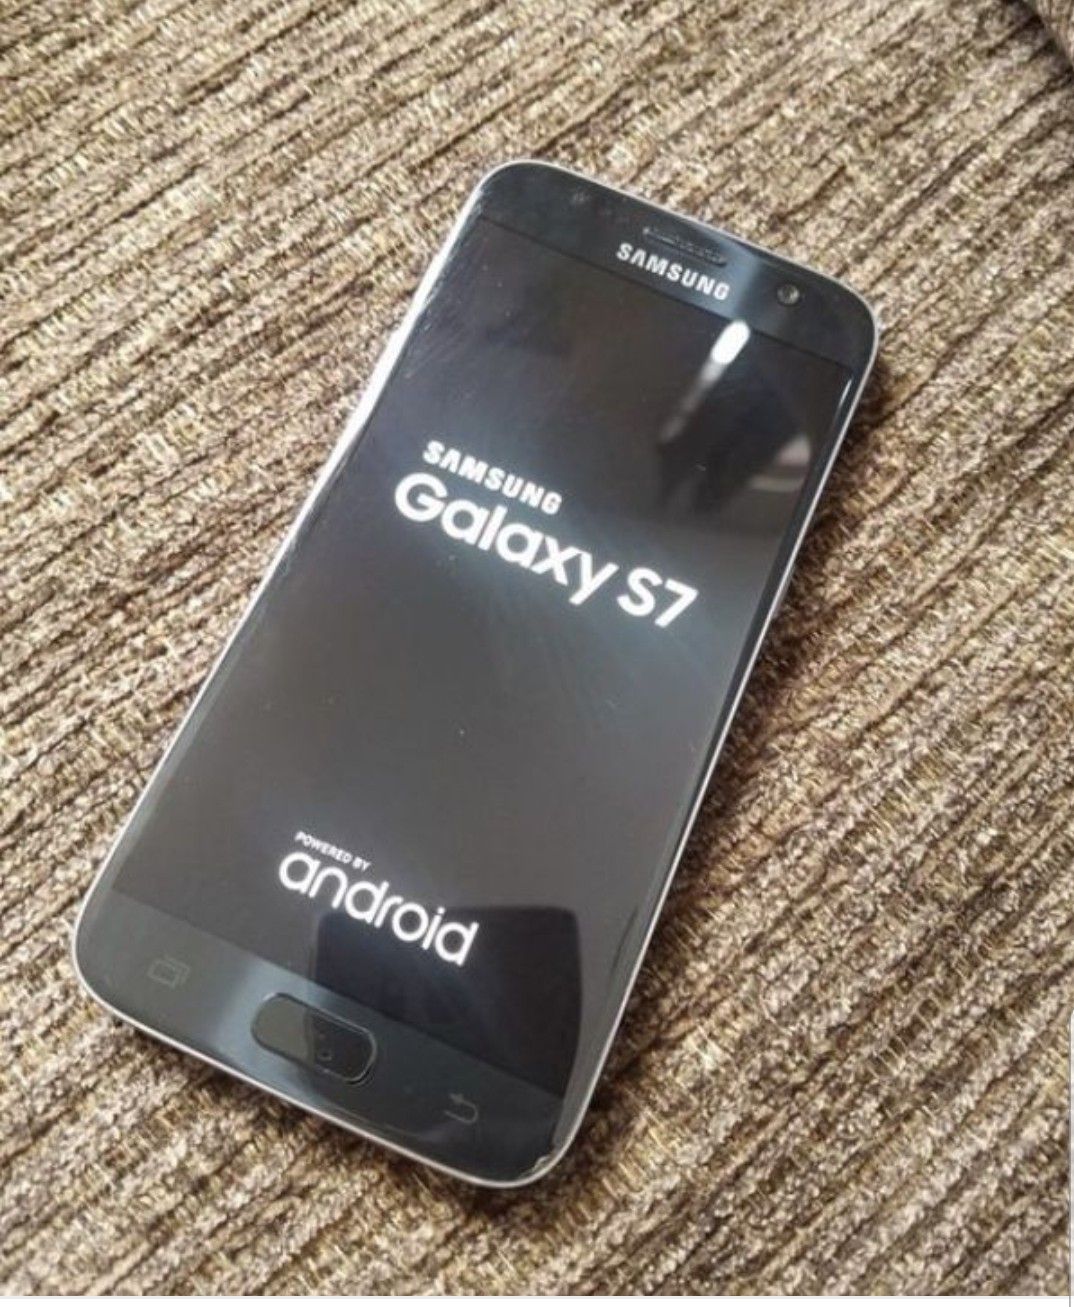 Samsung Galaxy s7 Black